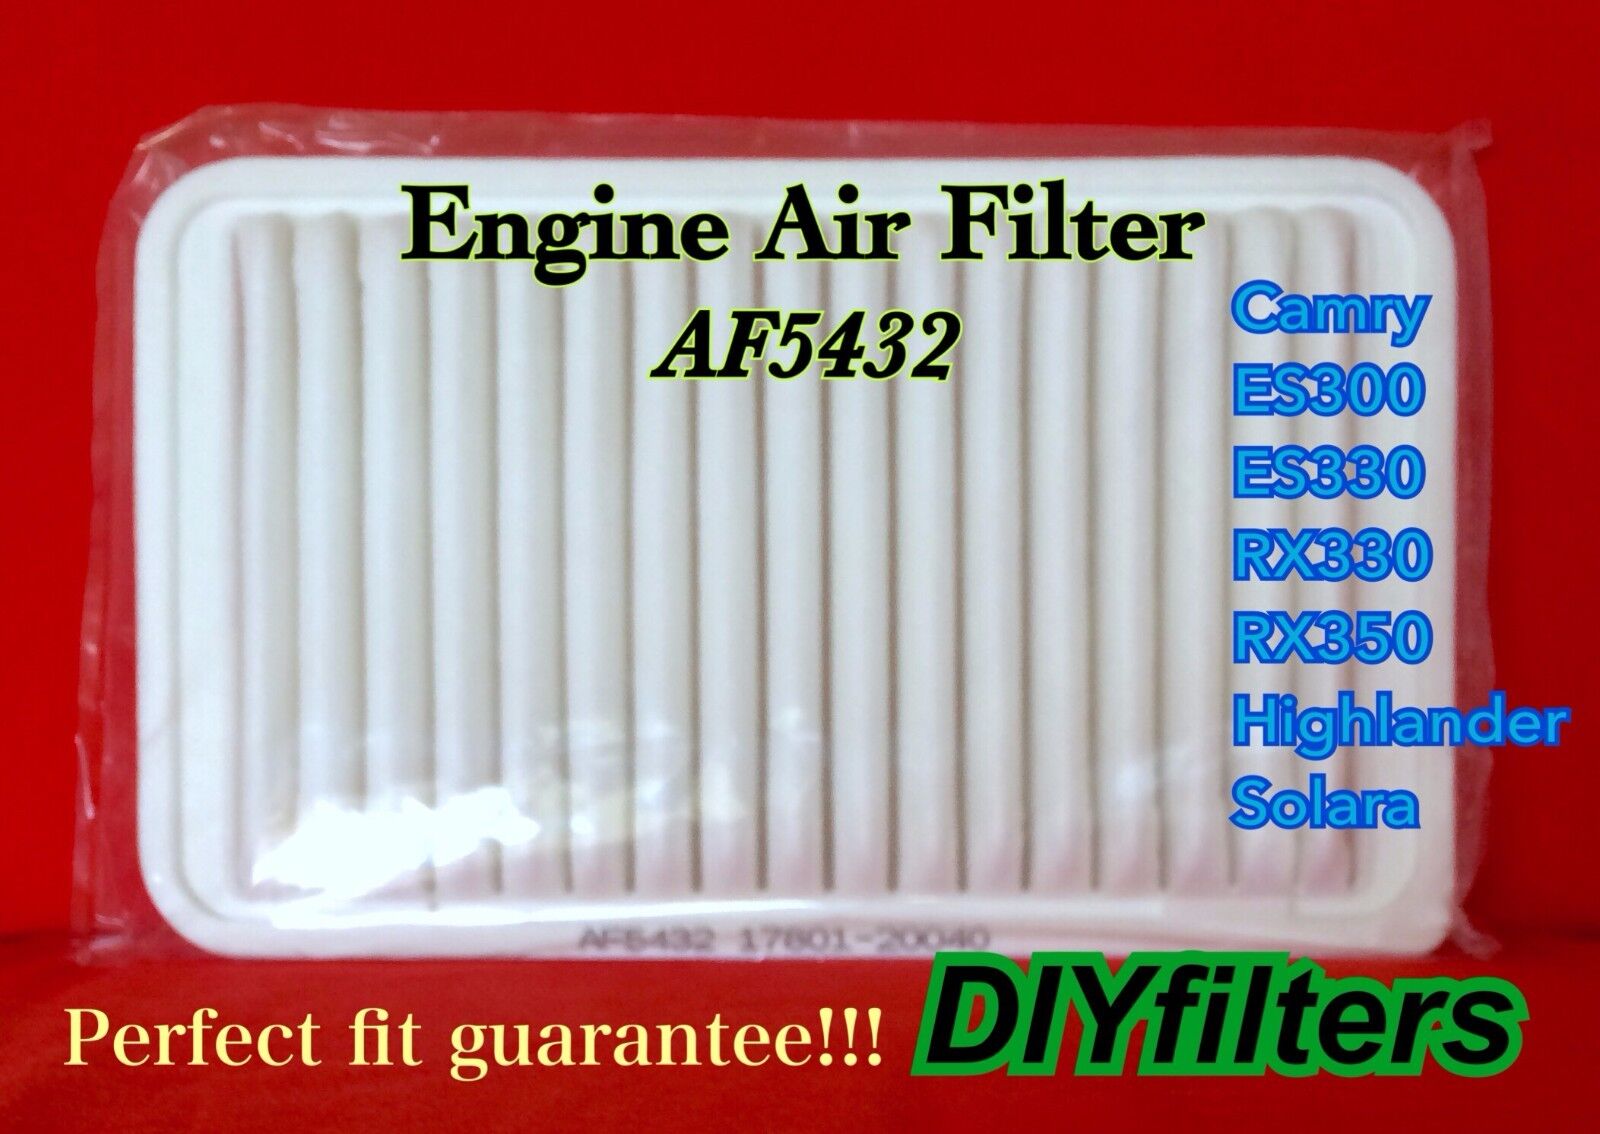 AF5432 Premium Engine Air Filter for Camry Highlander sienna ES300 ES330 RX330 